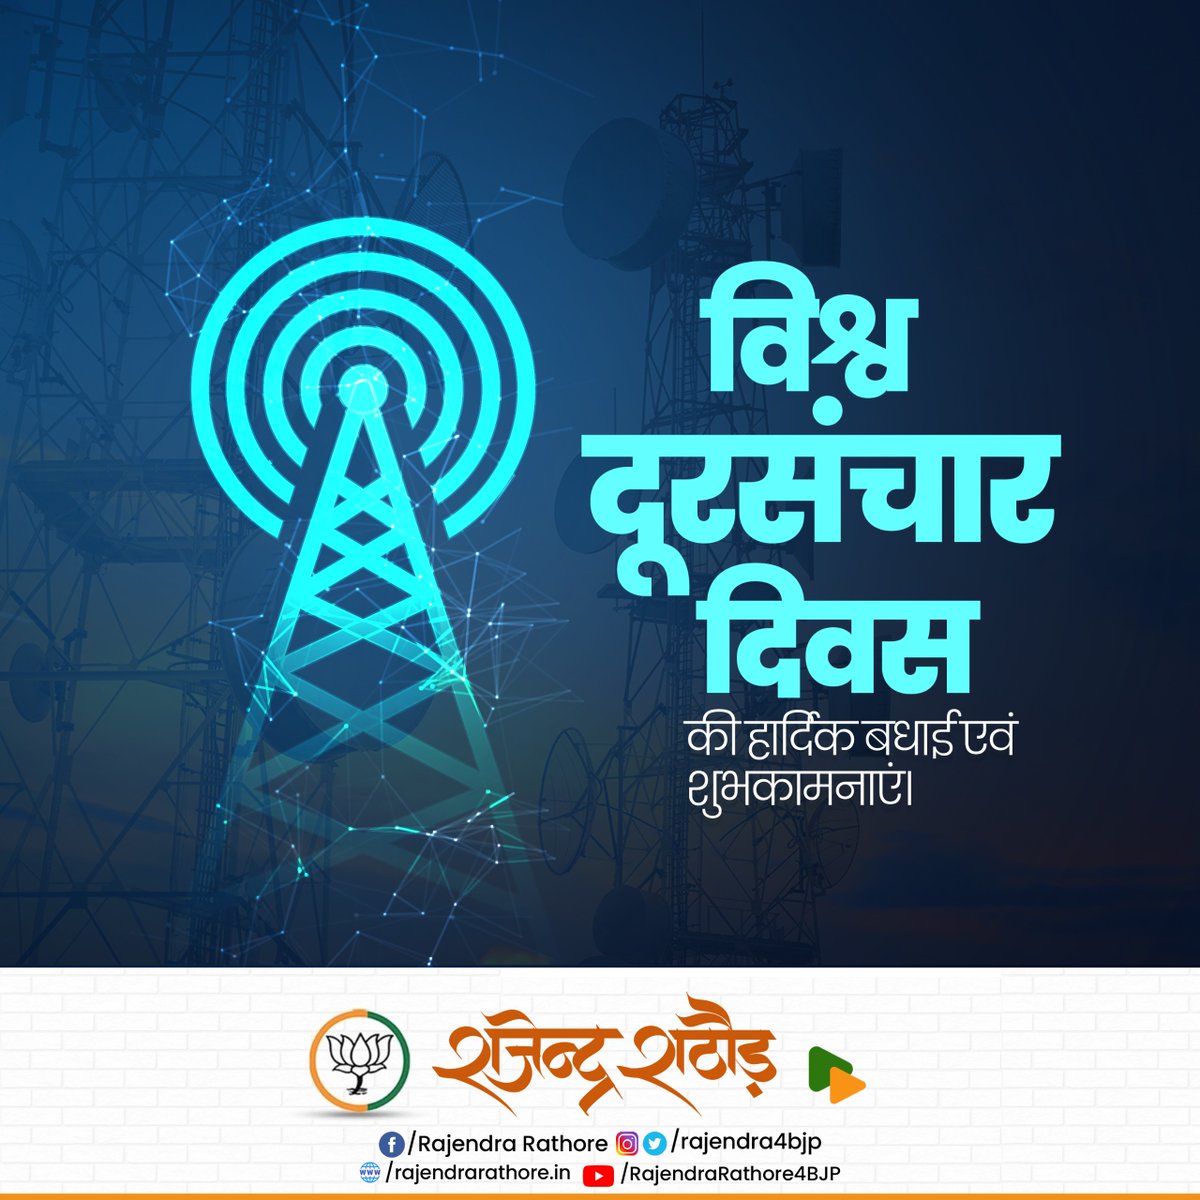 इंटरनेट और नवीन प्रौद्योगिकी में हुए क्रांतिकारी बदलाव के कारण आज भारतीय दूरसंचार नई उपलब्धियां हासिल कर रहा है। आइये, विश्व दूरसंचार दिवस के अवसर पर दूरसंचार माध्यमों के विस्तार और अधिकाधिक उपयोग करने का संकल्प लें।